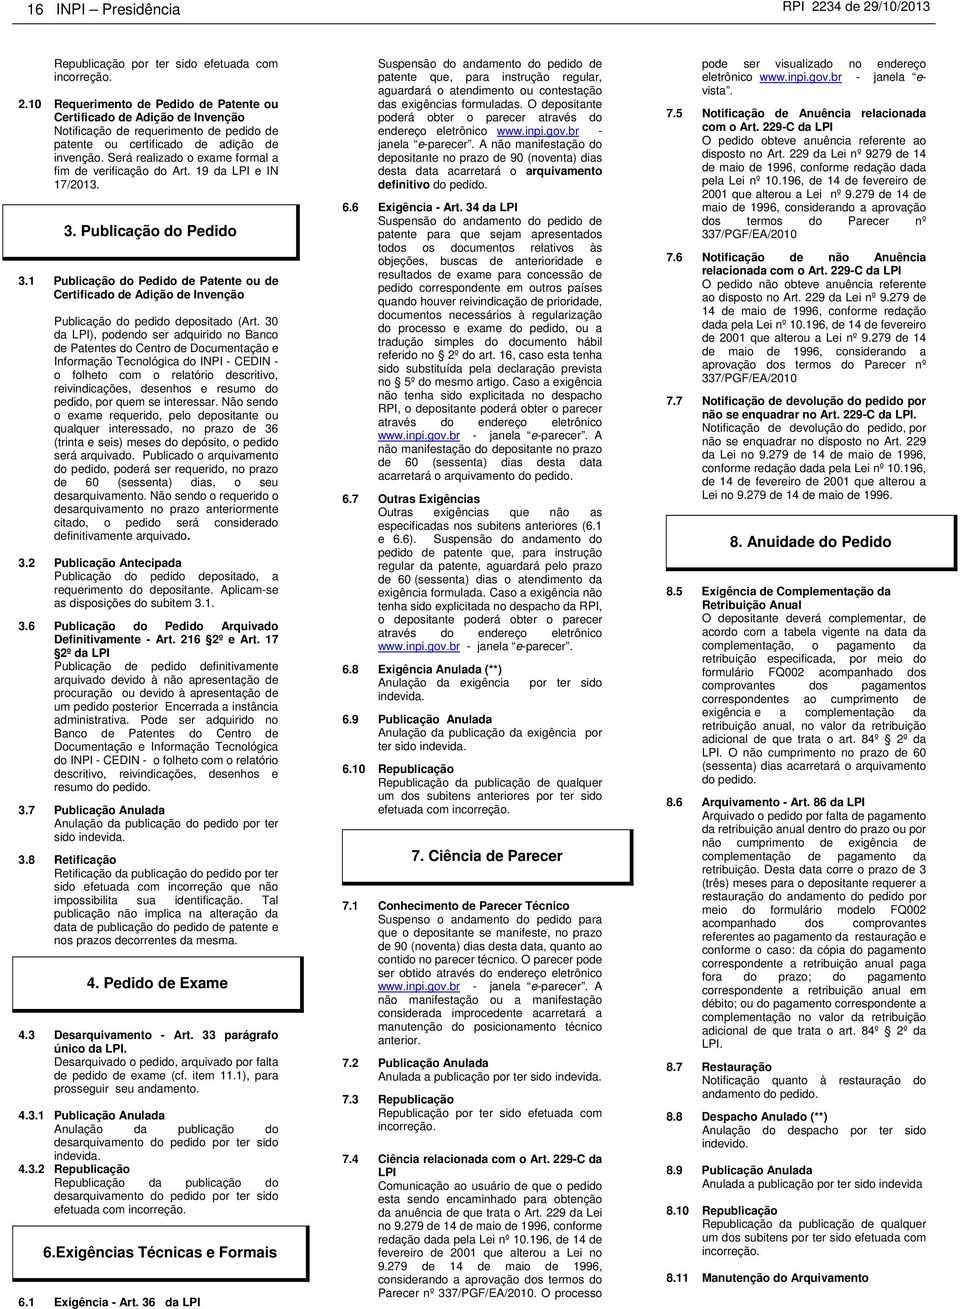 1 Publicação do Pedido de Patente ou de Certificado de Adição de Invenção Publicação do pedido depositado (Art.